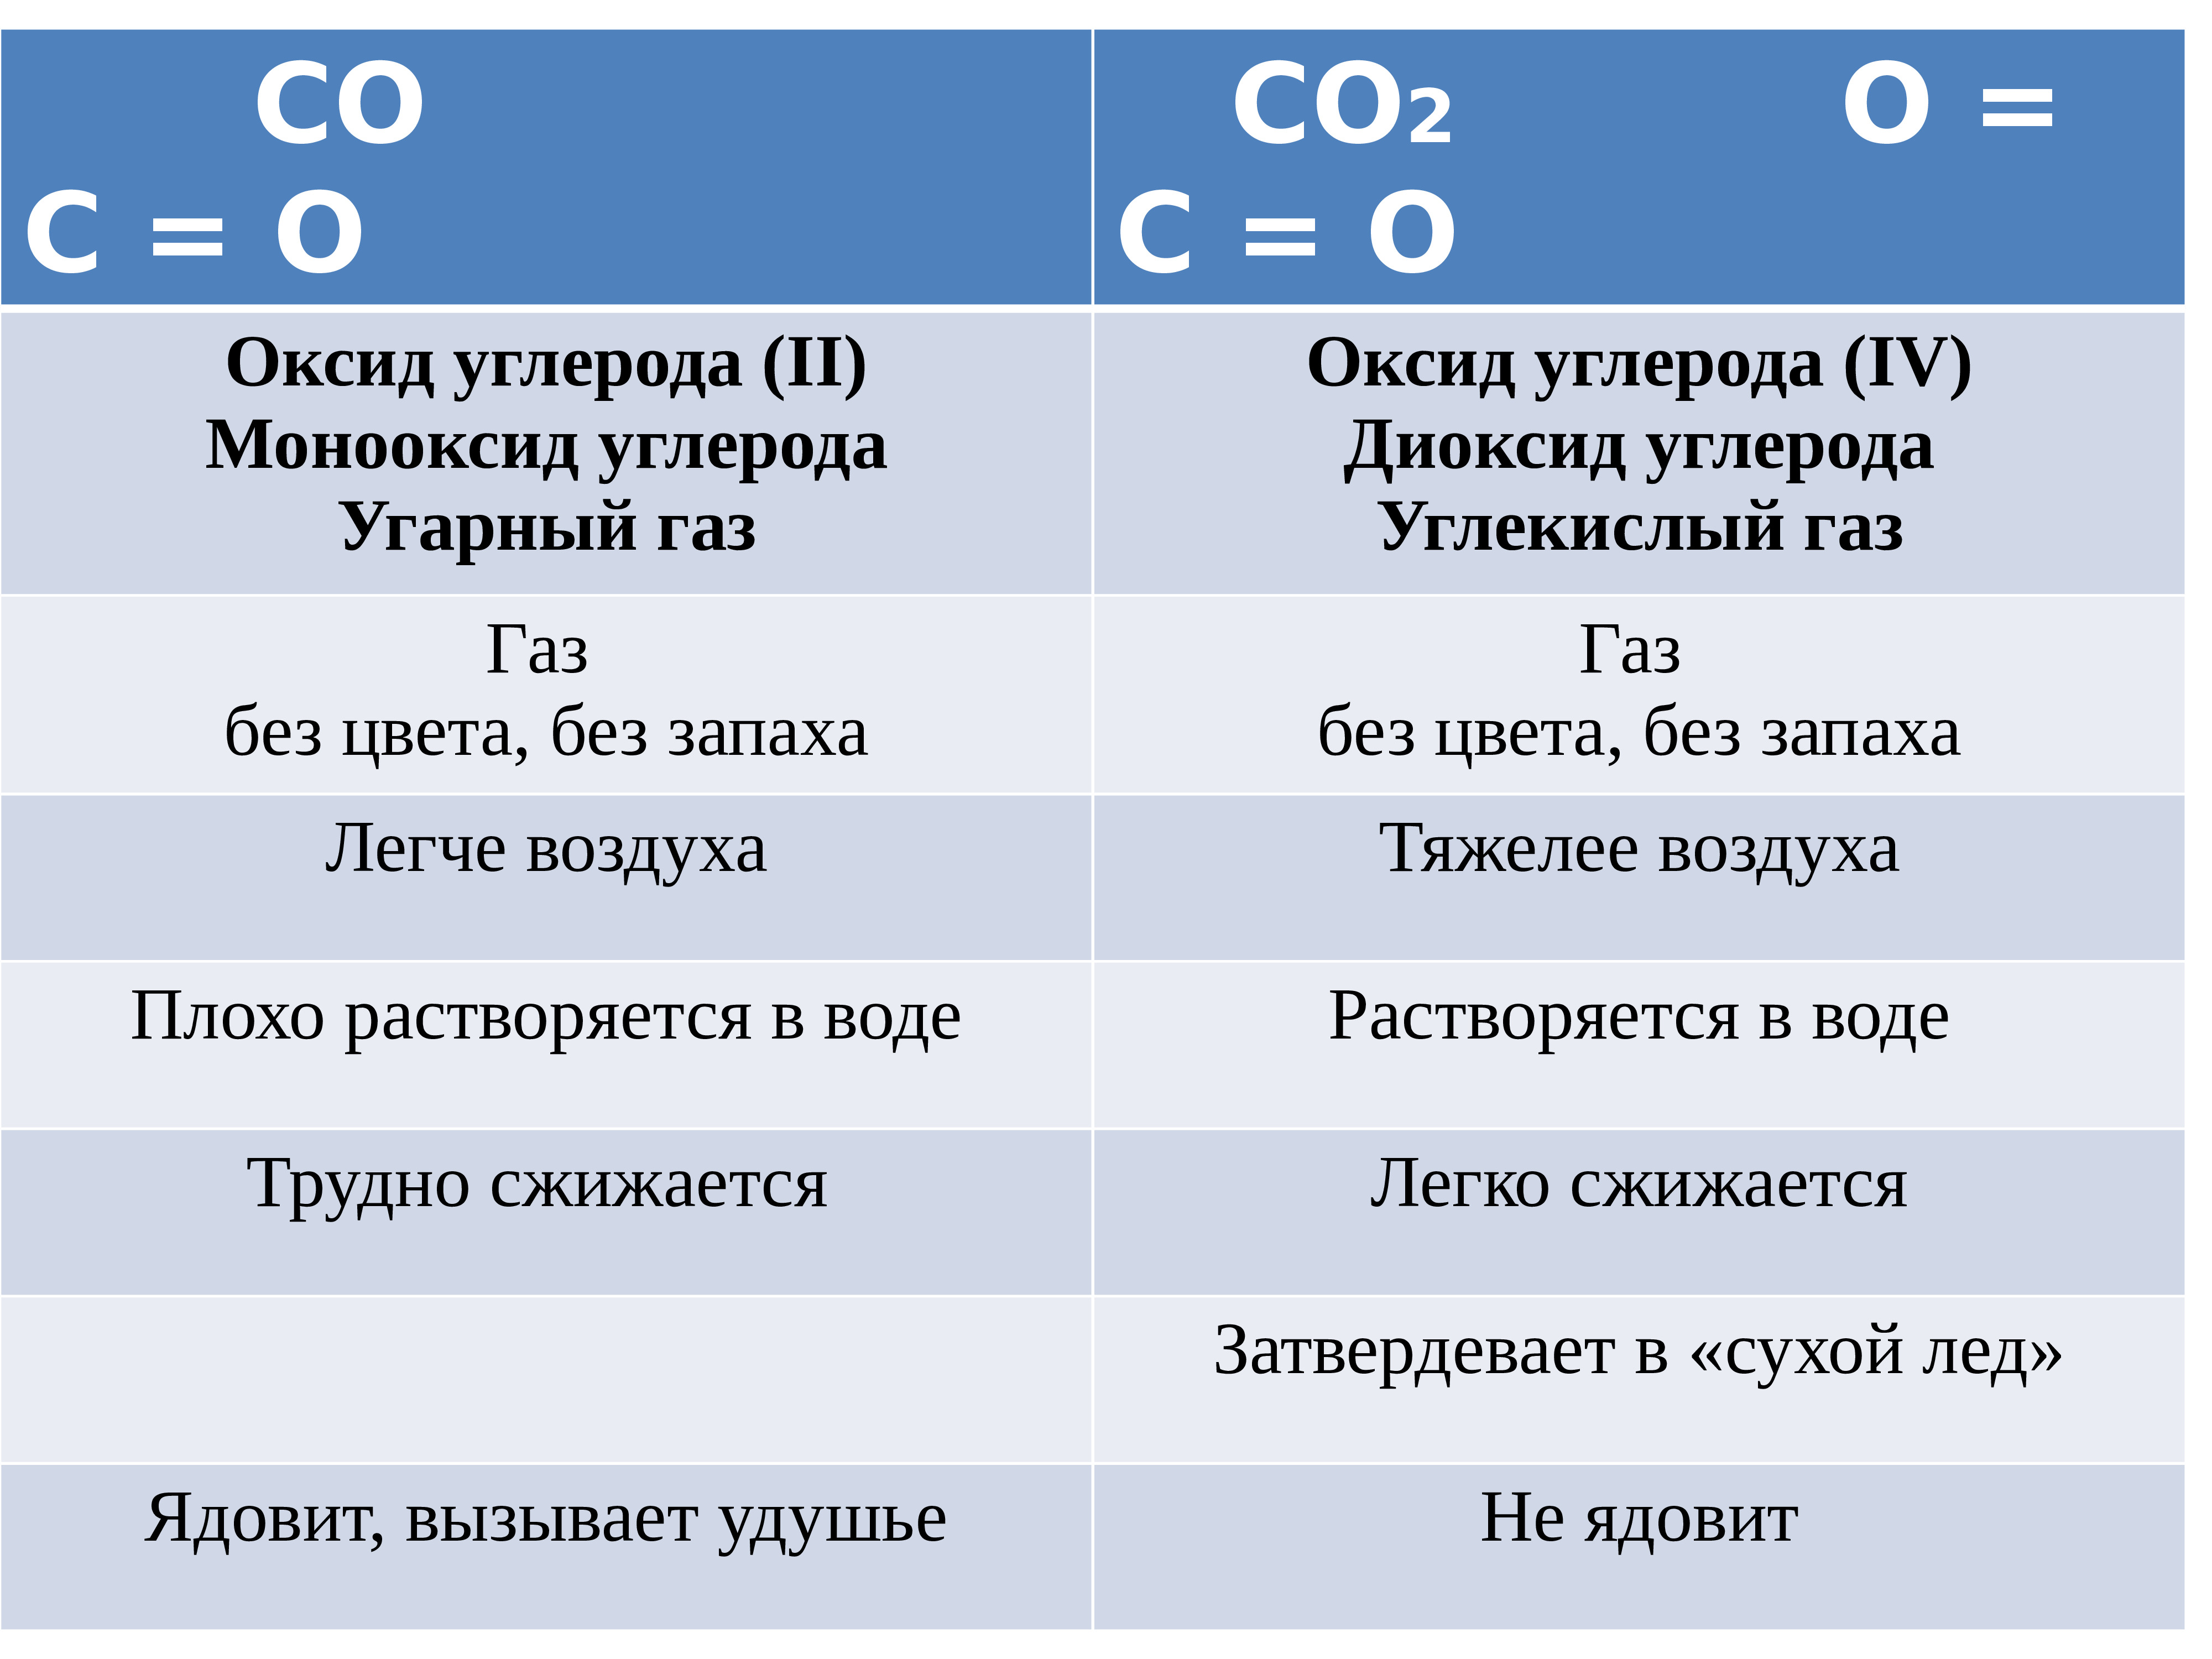 Газы 1.3. Формулы соединений углерода. Оксид углерода 2 легче или тяжелее воздуха. Uglerod oksid ugleroda. Таблица угарного газа.